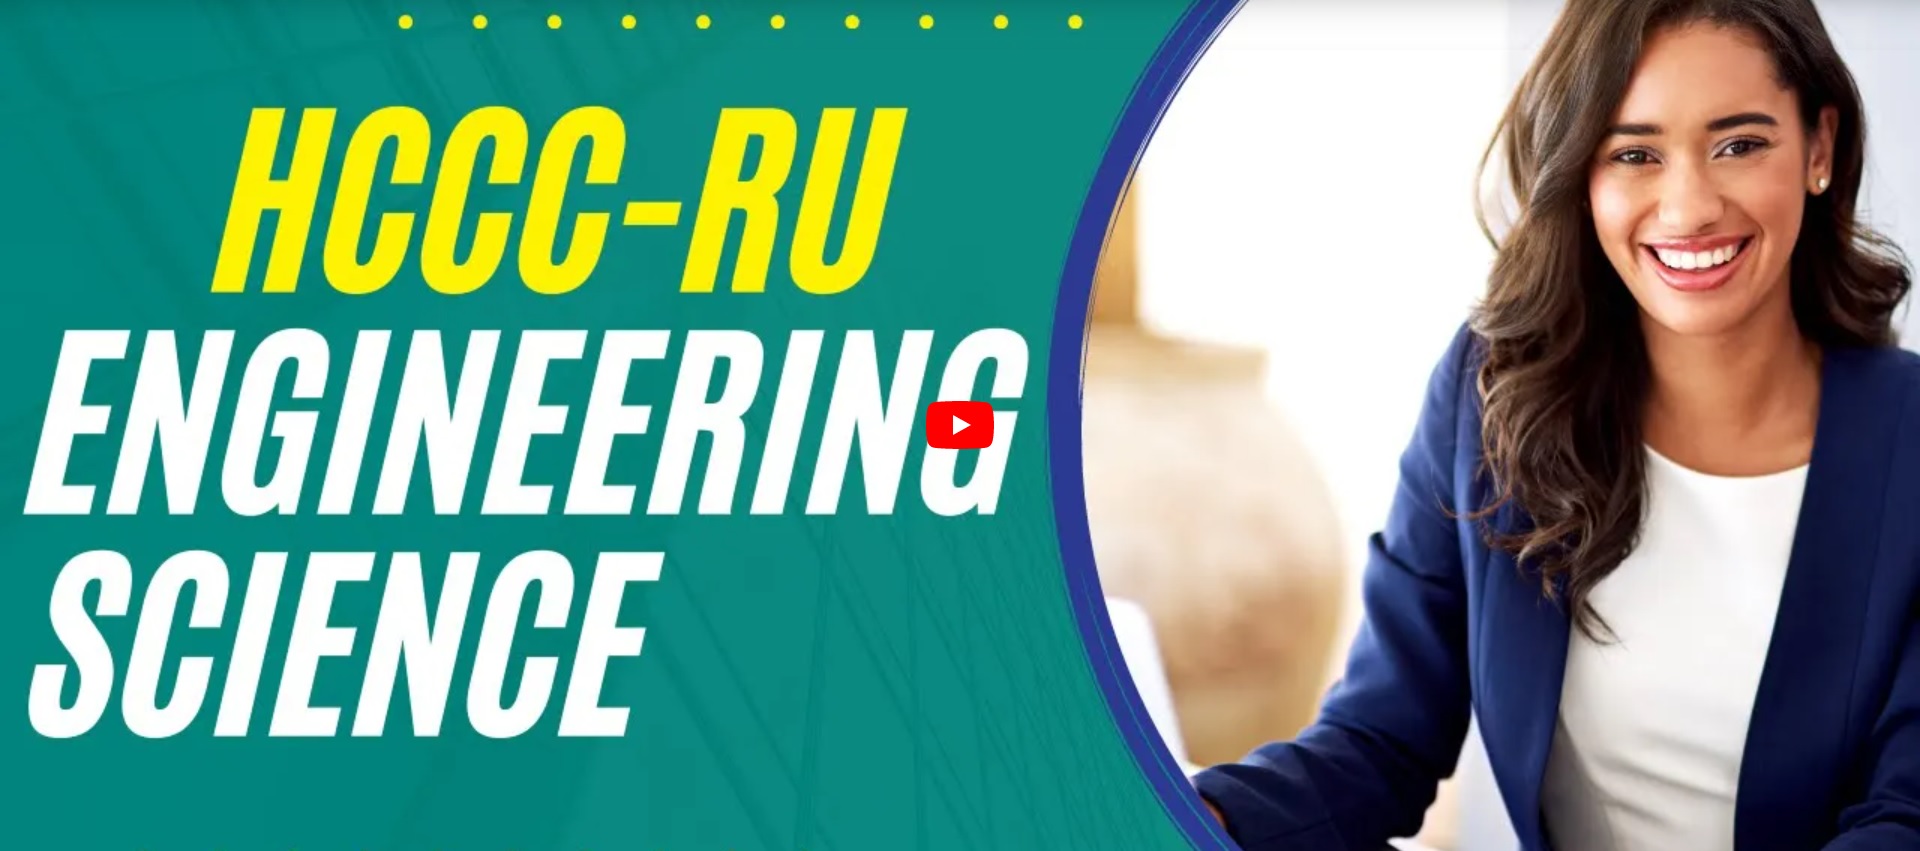 HCCC - Universidad de Rutgers: Sesión informativa sobre programas de transferencia de ingeniería